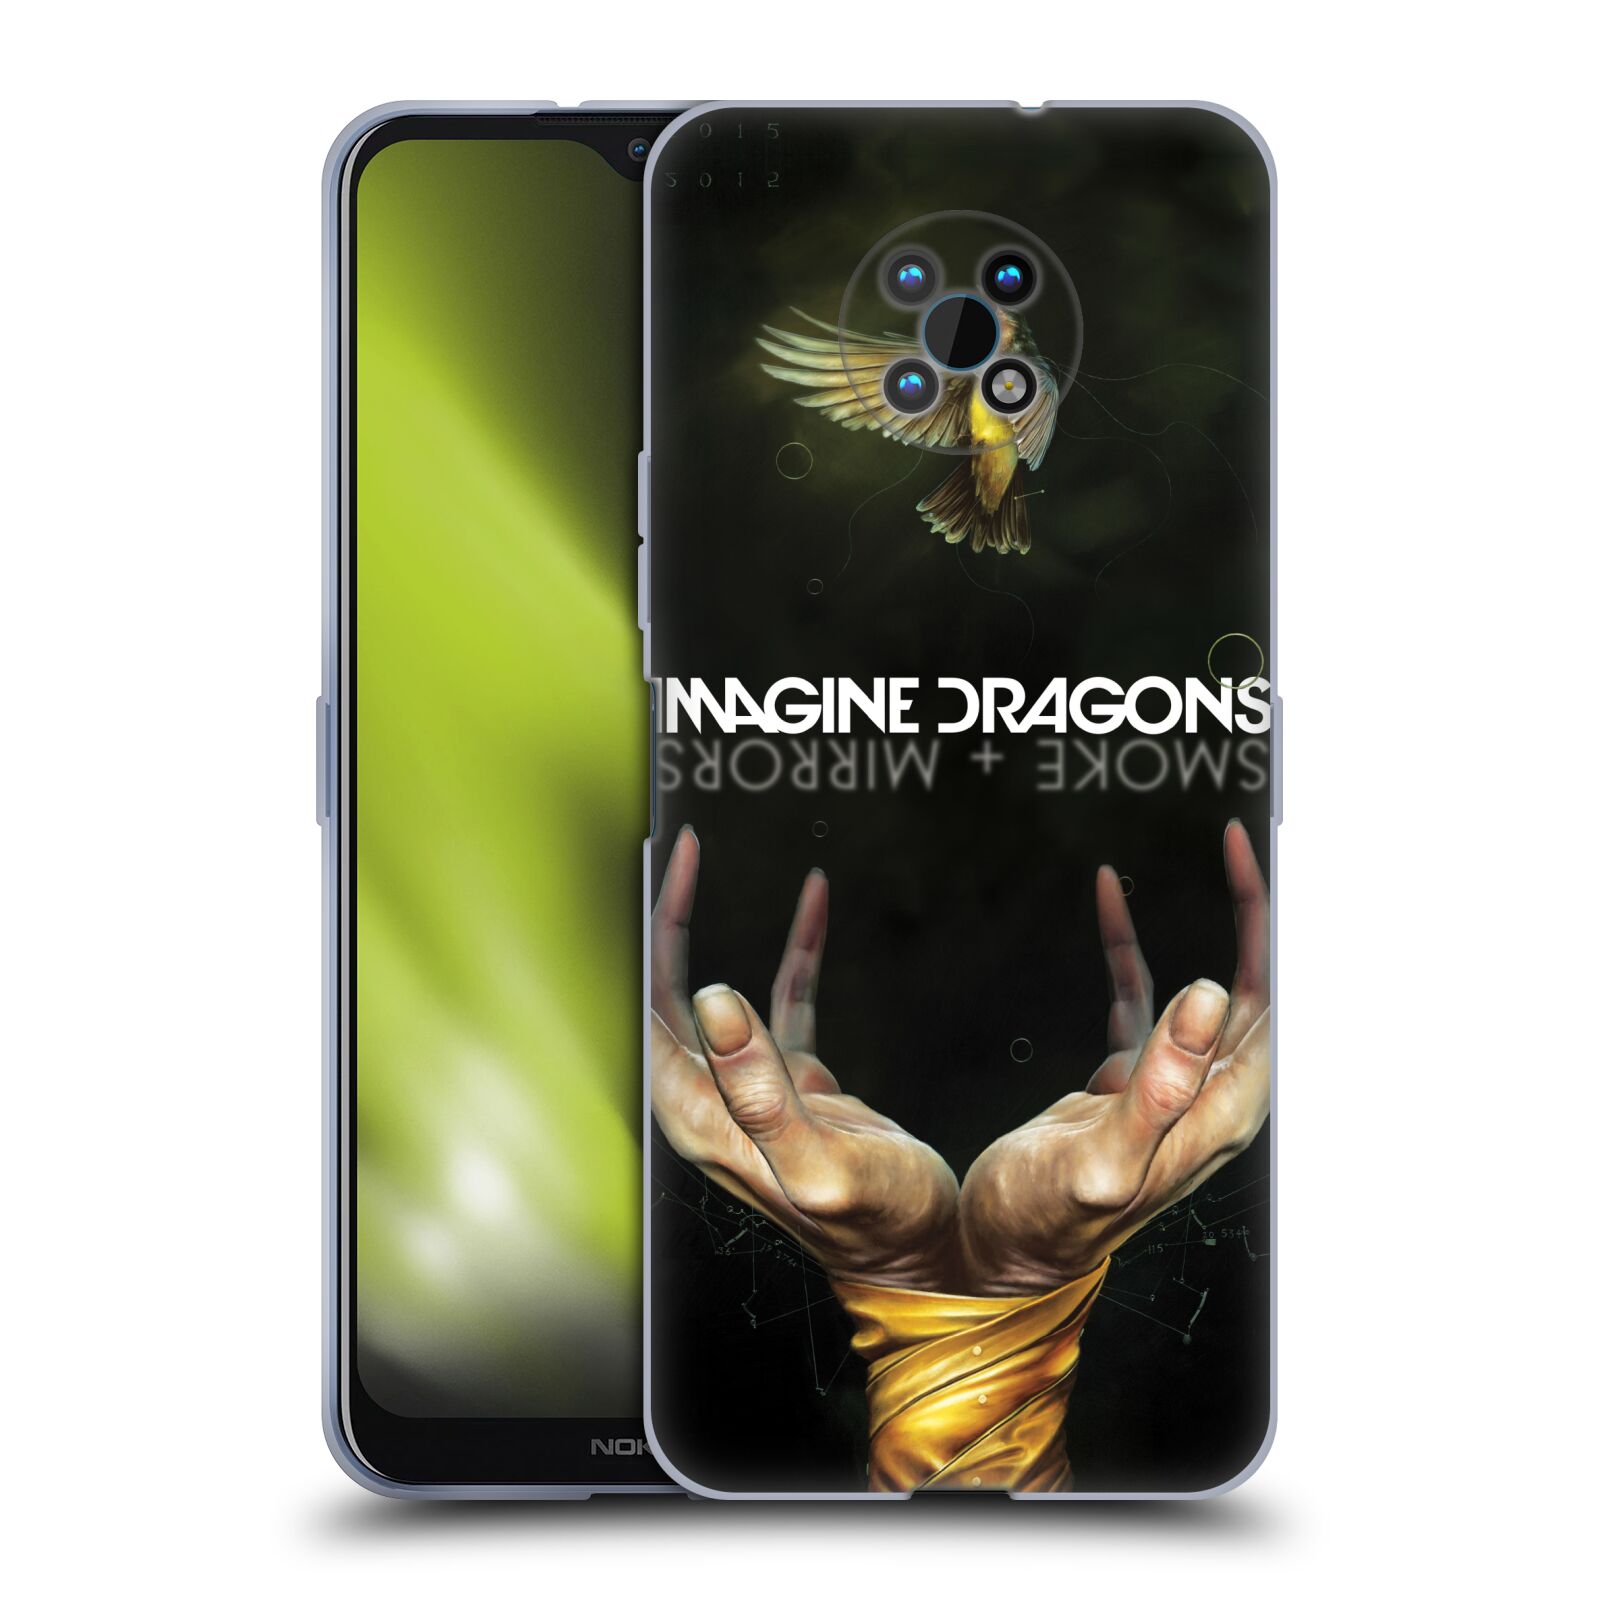 Silikonové pouzdro na mobil Nokia G50 5G - Imagine Dragons - Smoke And Mirrors